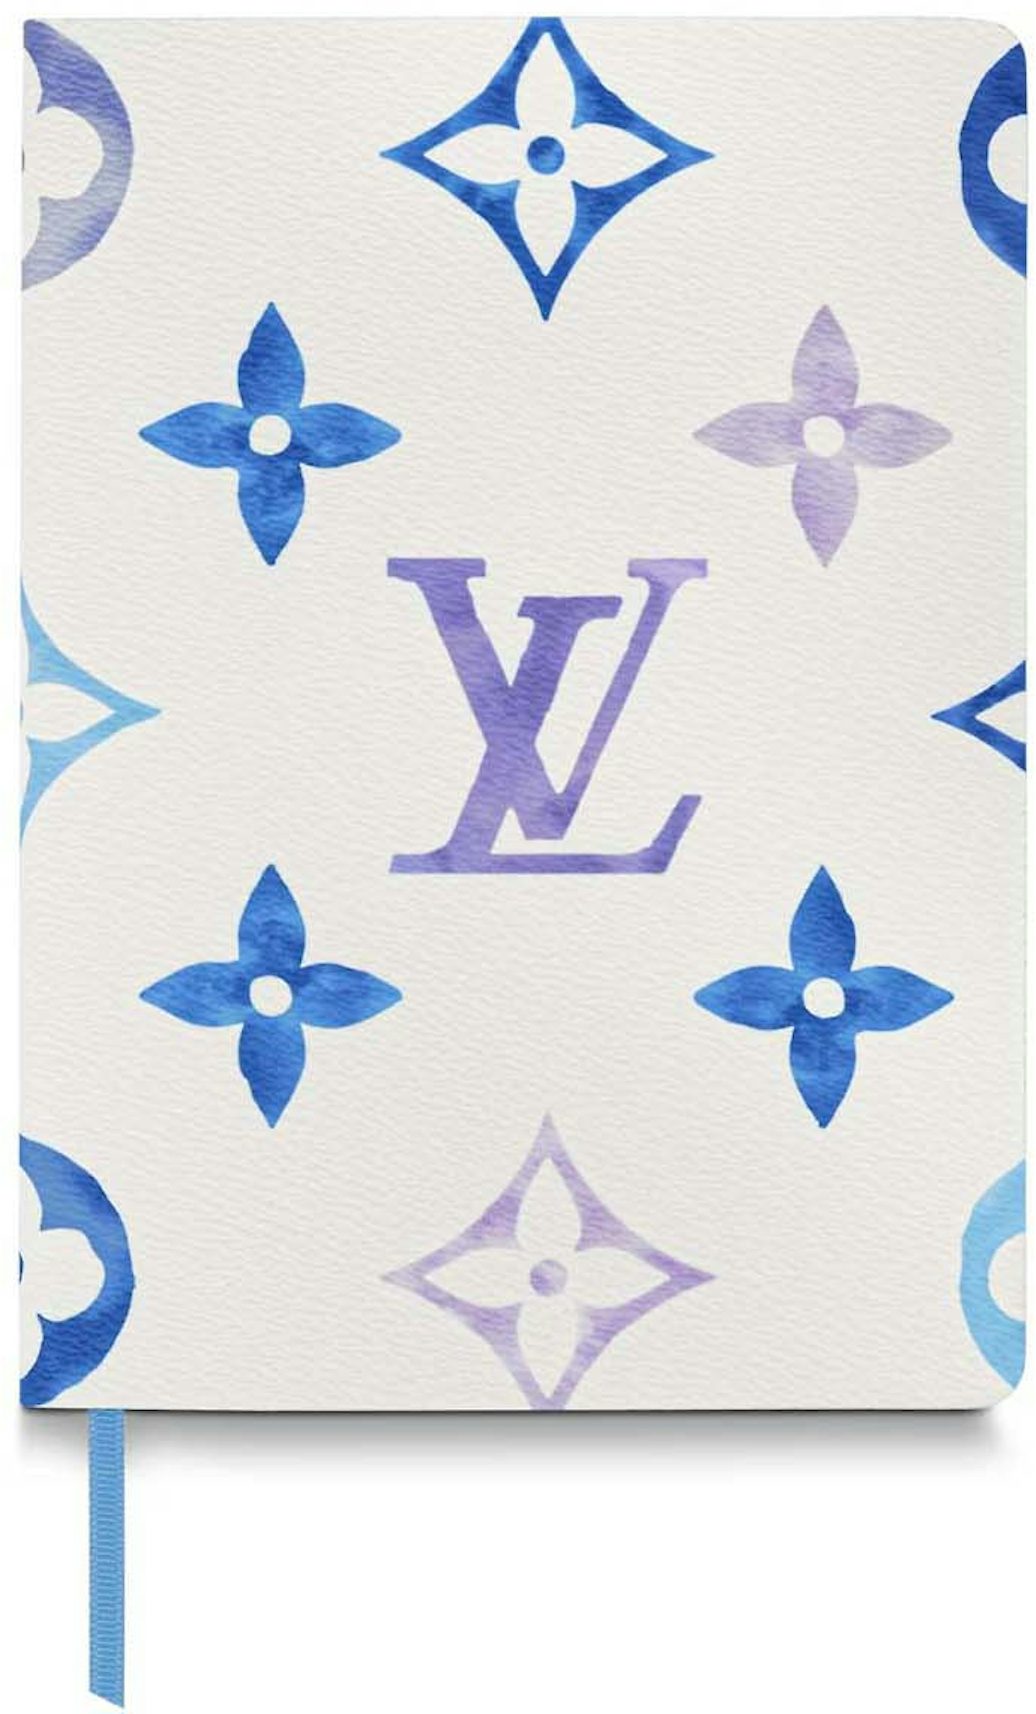 Louis Vuitton Graffiti Auguste Notebook Cover LV Graffiti Multicolor